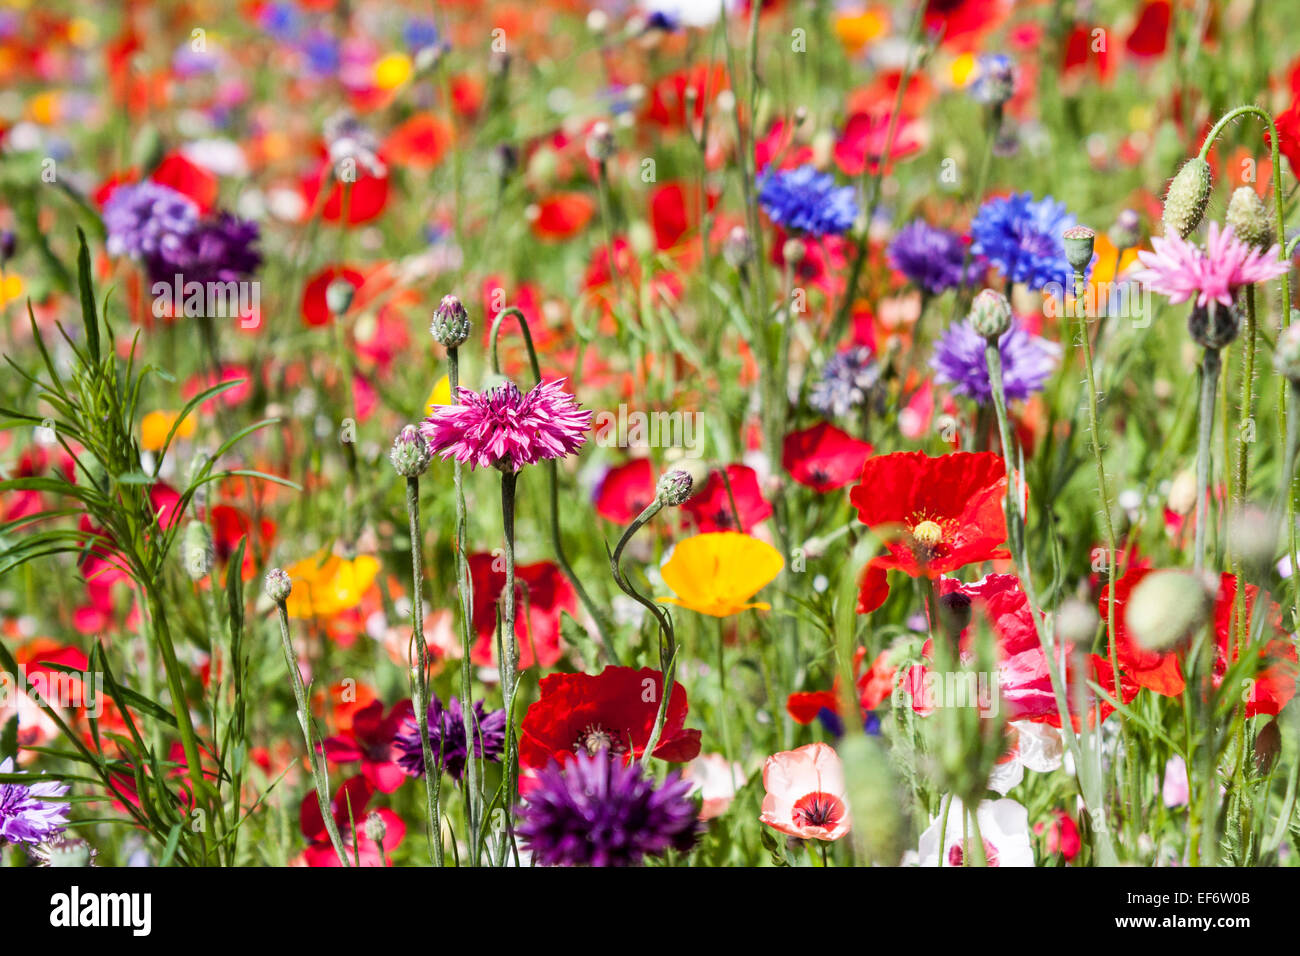 Ein Grasrand mit einer Auswahl an Mohn, Kornblumen und anderen Wildblumen gepflanzt. Berkshire, England, GB, Großbritannien Stockfoto